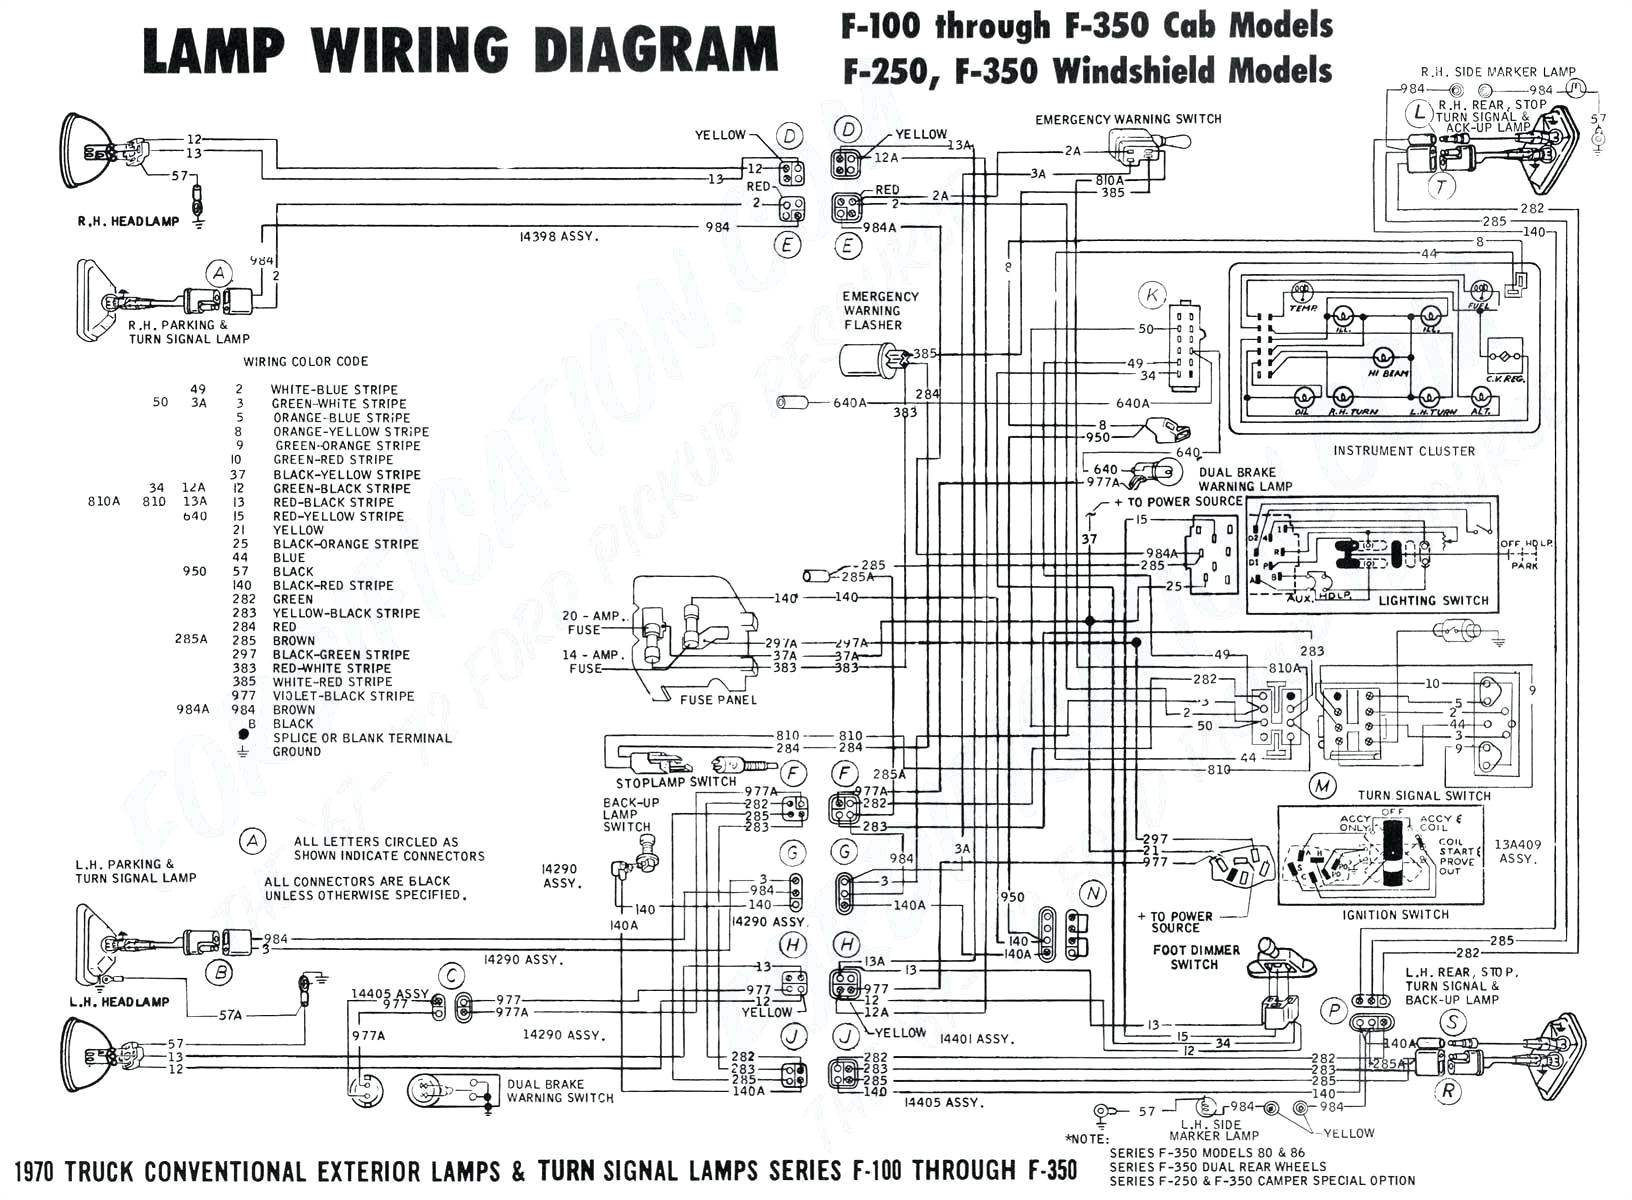 1997 ford escort wiring diagram free wiring diagram post scosche fdk11b wiring diagram free download schematic